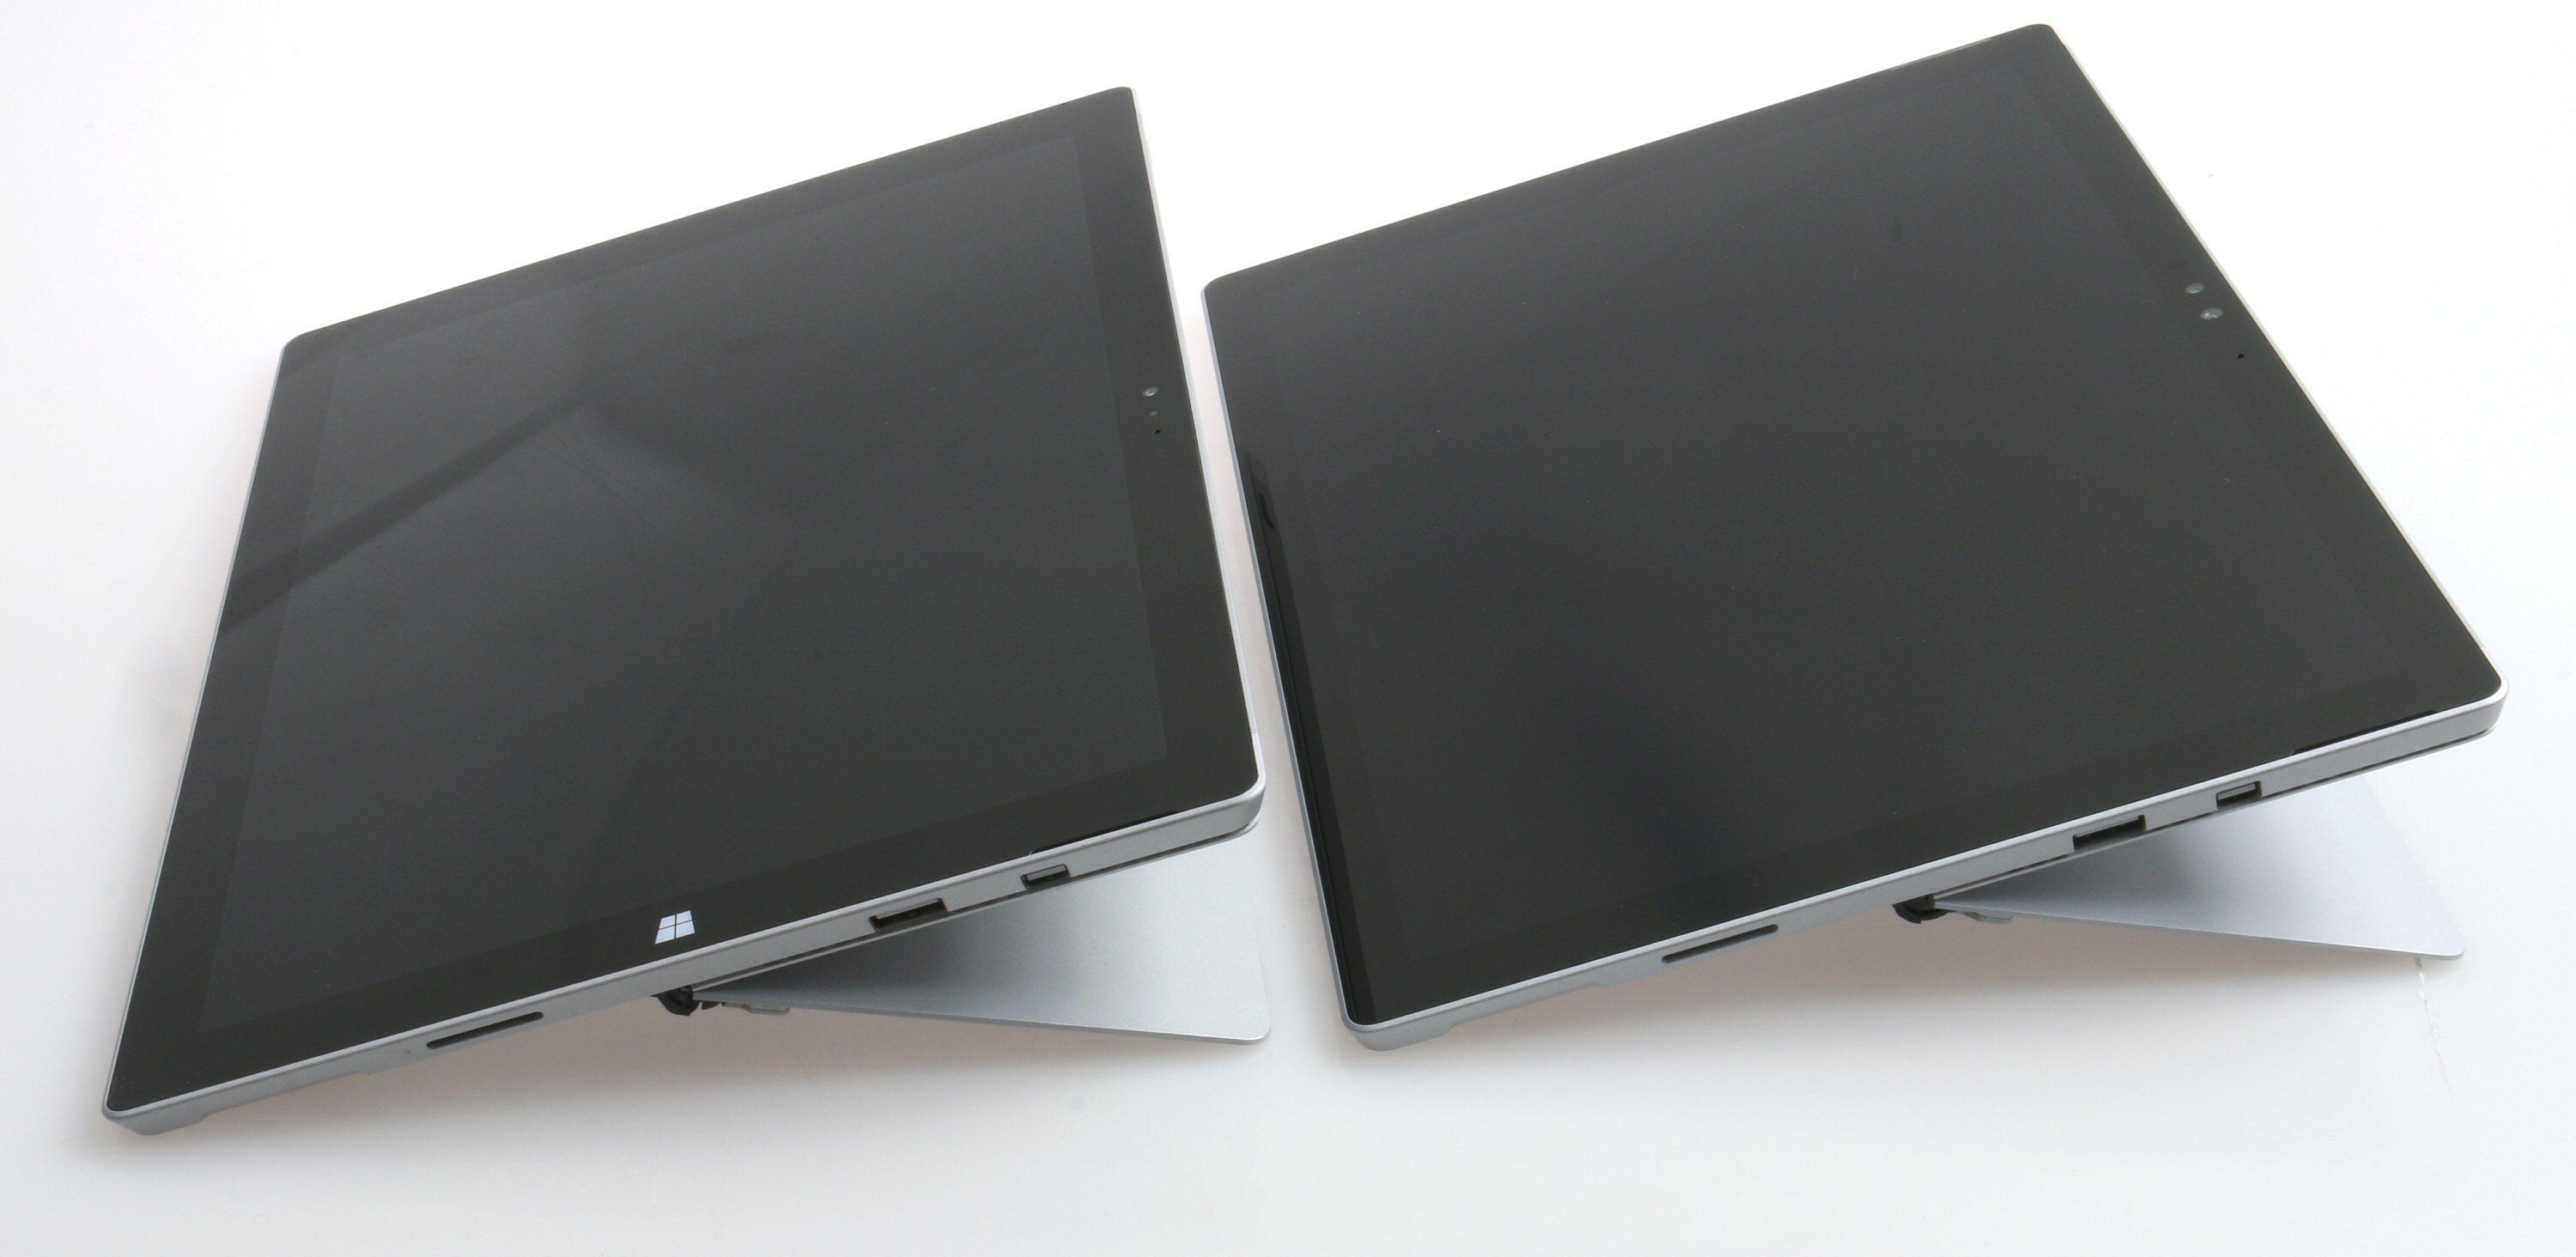 Surface Pro 4s støttebein eller kickstand er identisk med forgjengerens. Pro 4 til høyre, vi merker oss at «windowstast»-merket er fjernet. Foto: Vegar Jansen, Tek.no